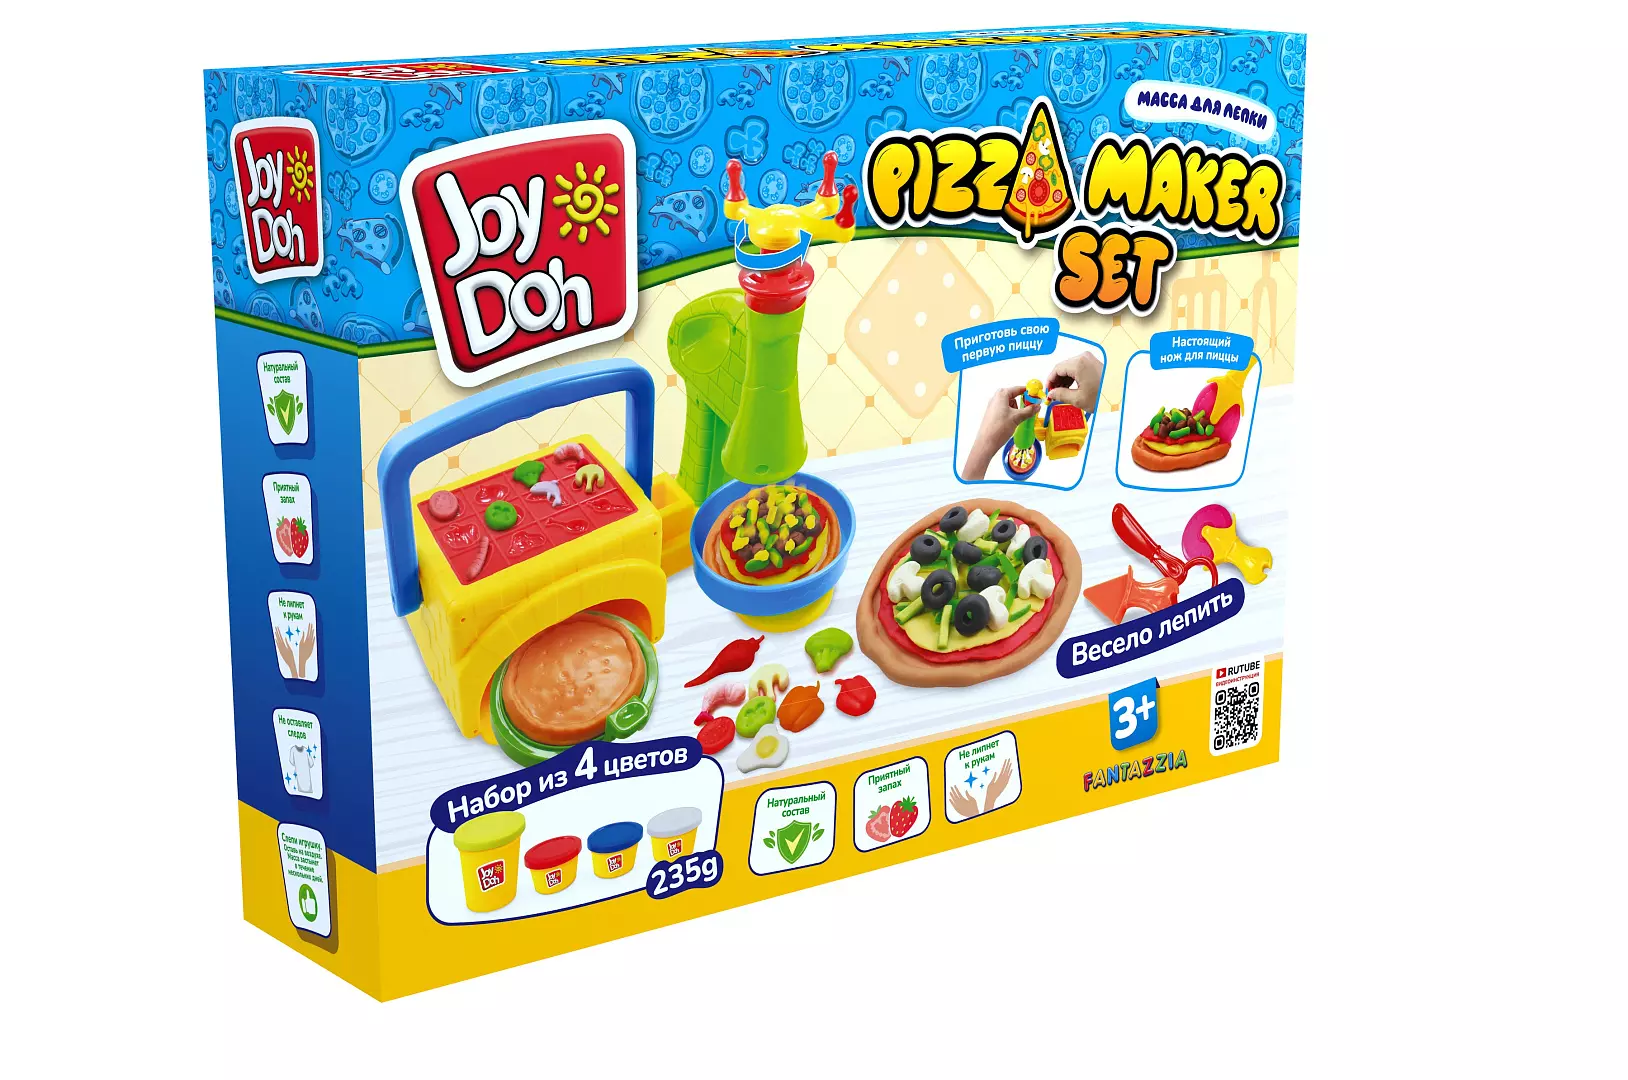 Масса для лепки Joy Doh, набор PIZZA MAKER SET - ПИЦЦЕРИЯ, печь с пресс-формами, машинка для терки с